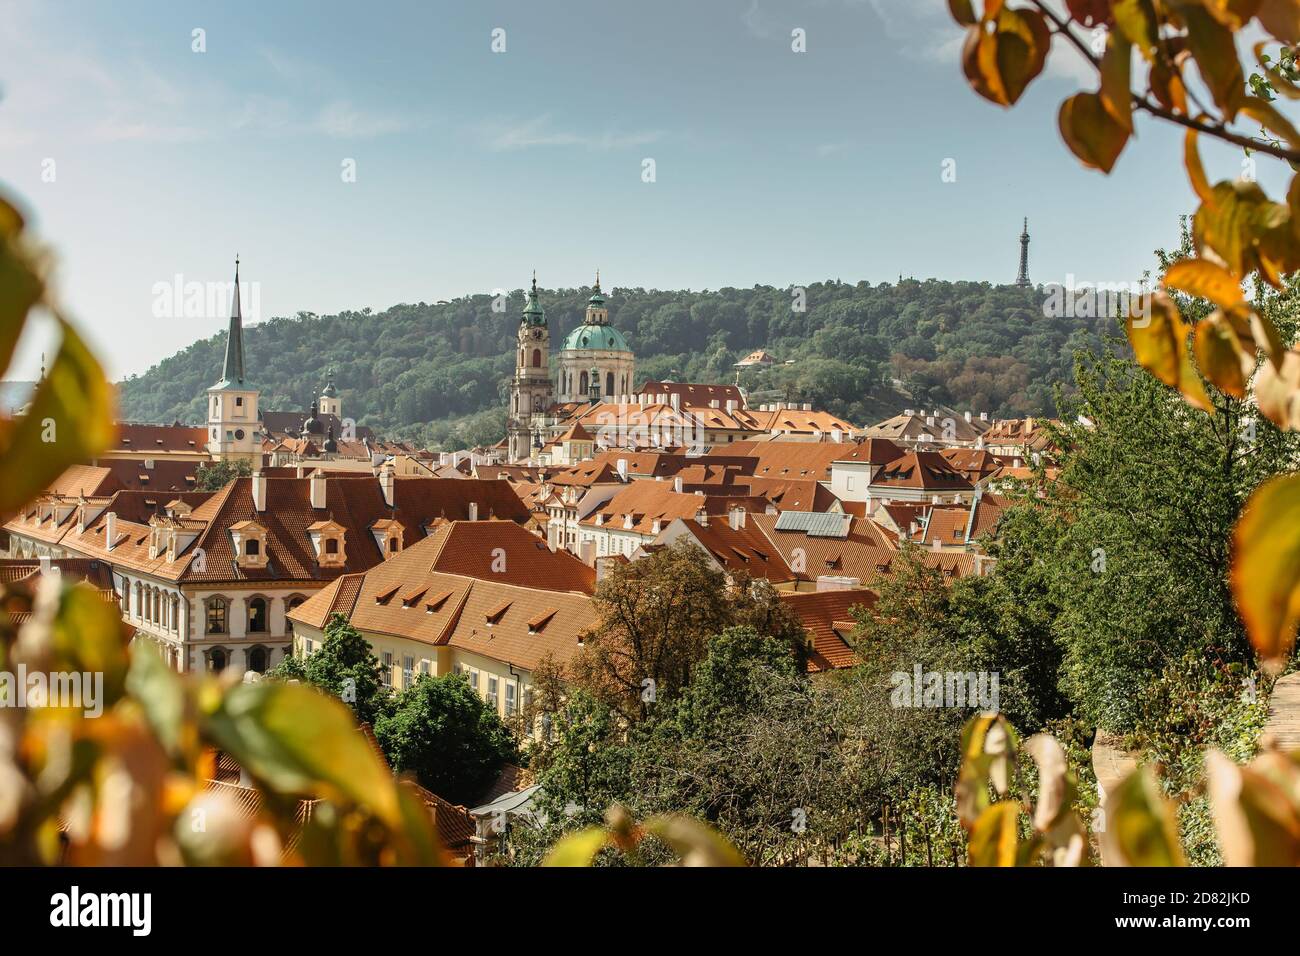 Vue de la vieille ville avec des bâtiments hictoriques, toits rouges, églises, colline de Petrin dedans Prague,Tchéquie.Panorama de Prague.magnifique paysage ensoleillé de la capitale Banque D'Images